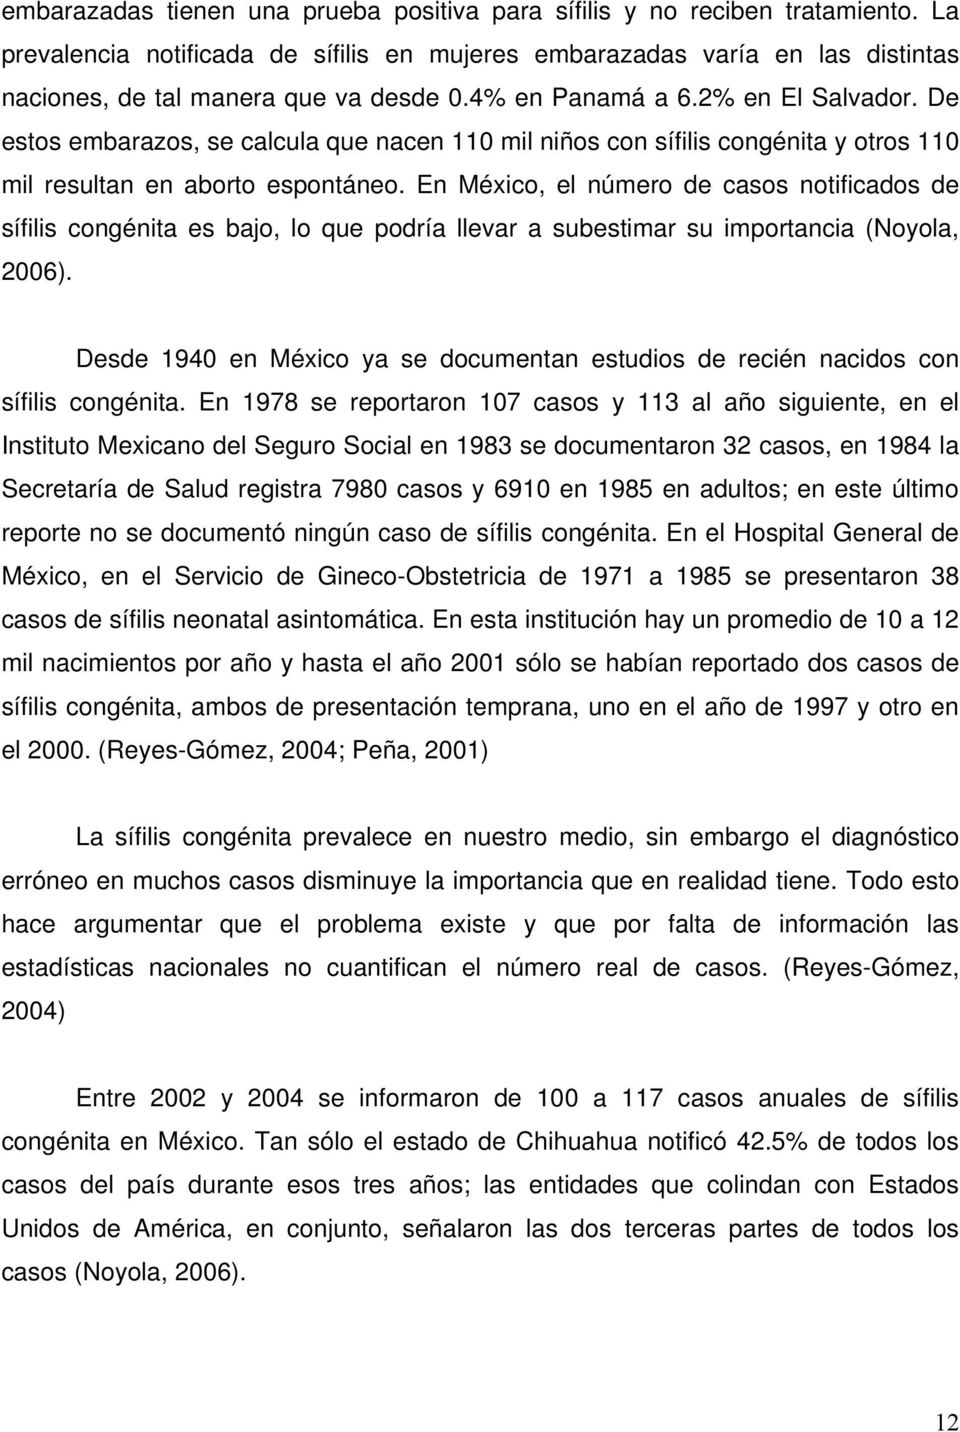 En México, el número de casos notificados de sífilis congénita es bajo, lo que podría llevar a subestimar su importancia (Noyola, 2006).